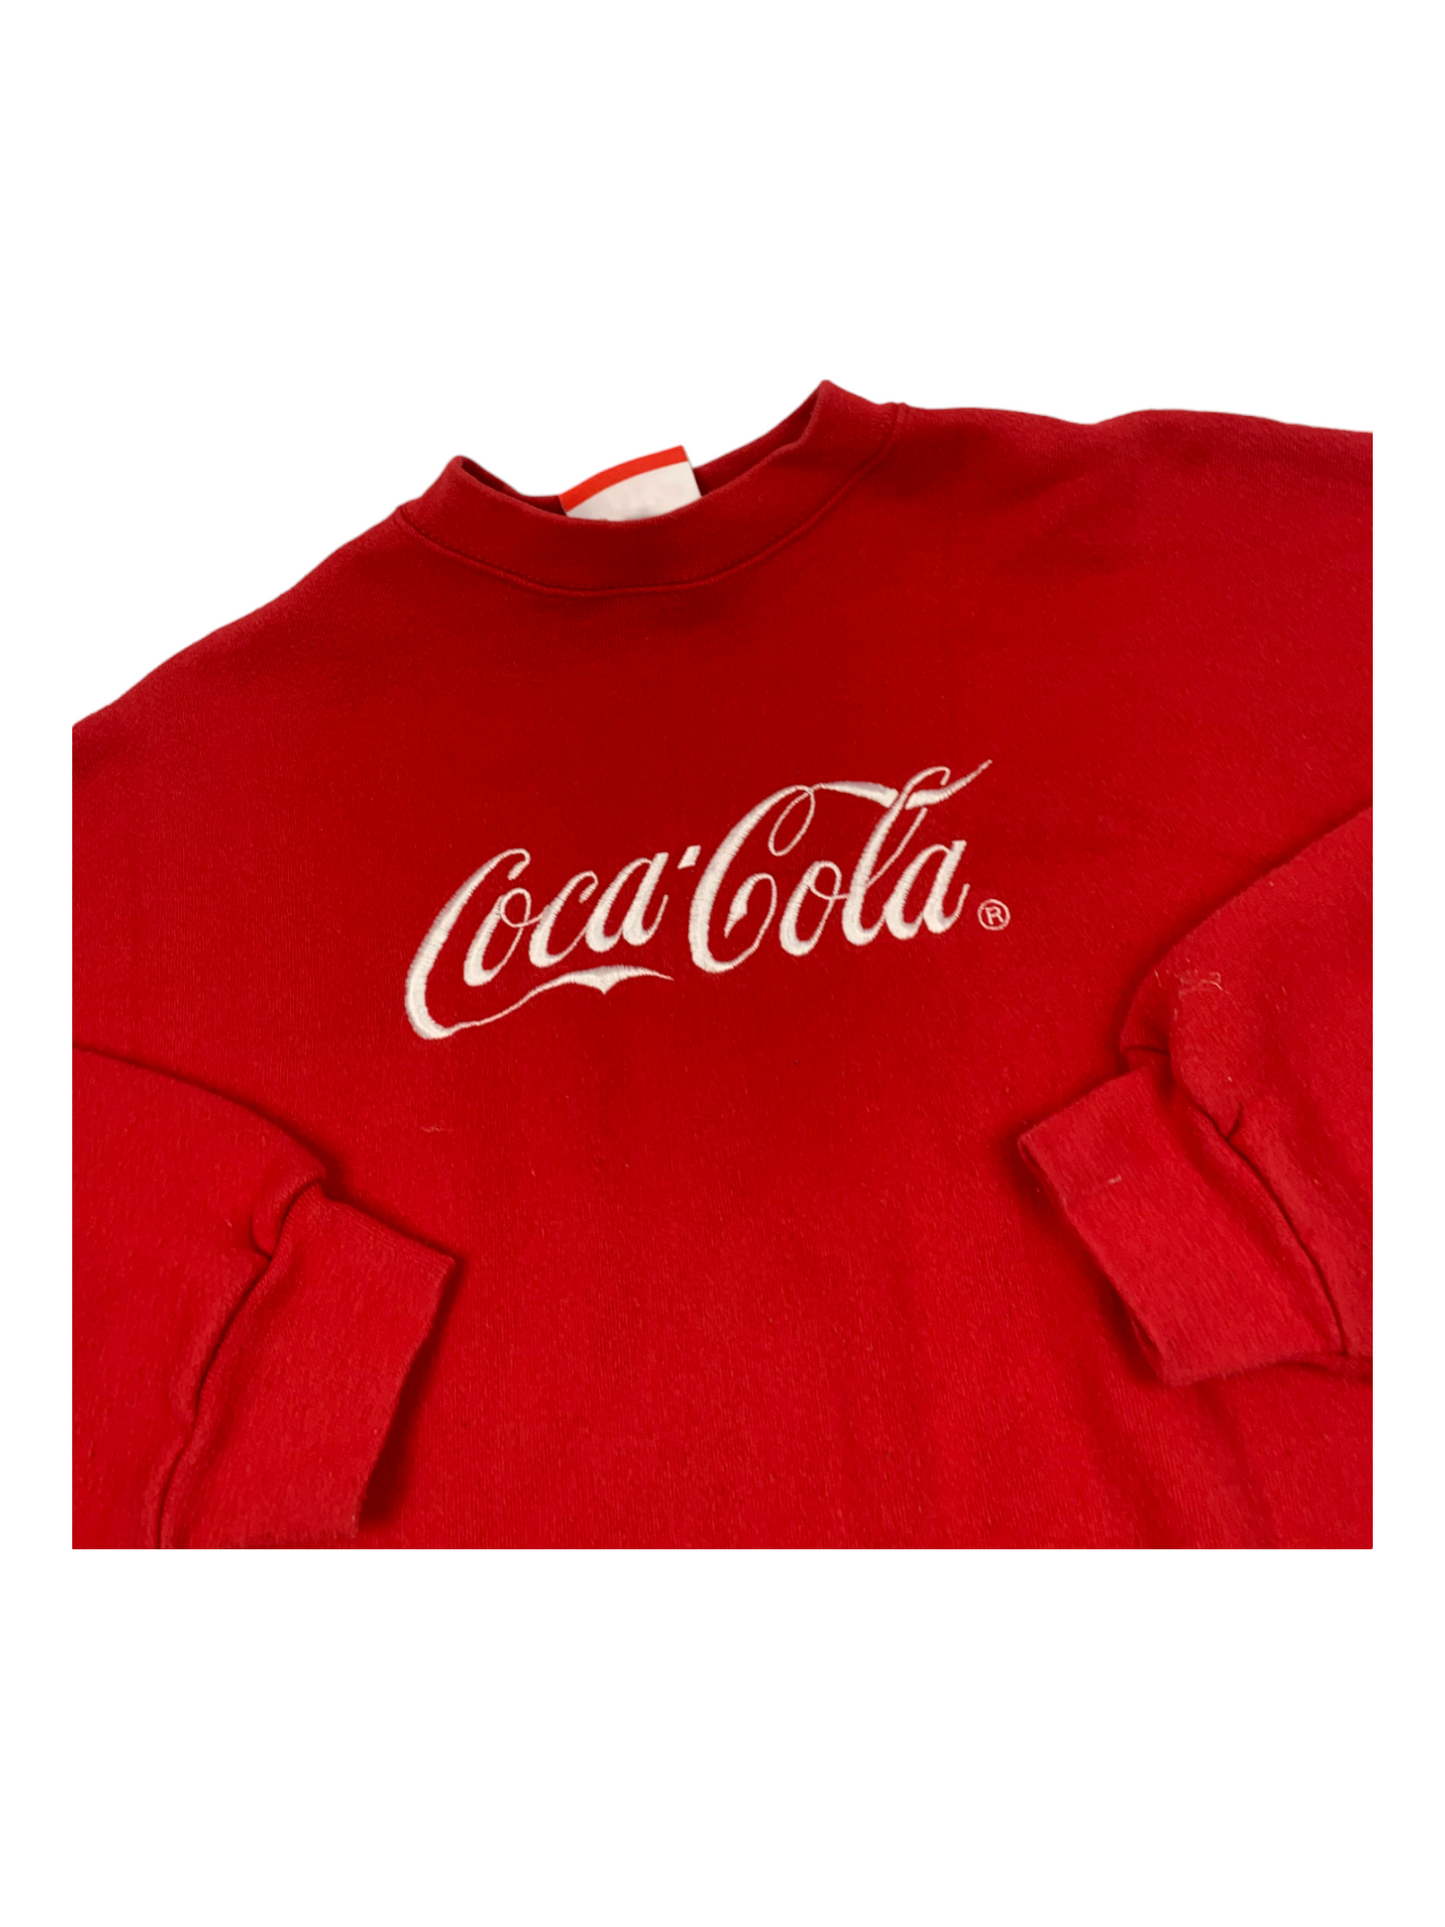 Coca Cola Red Crewneck